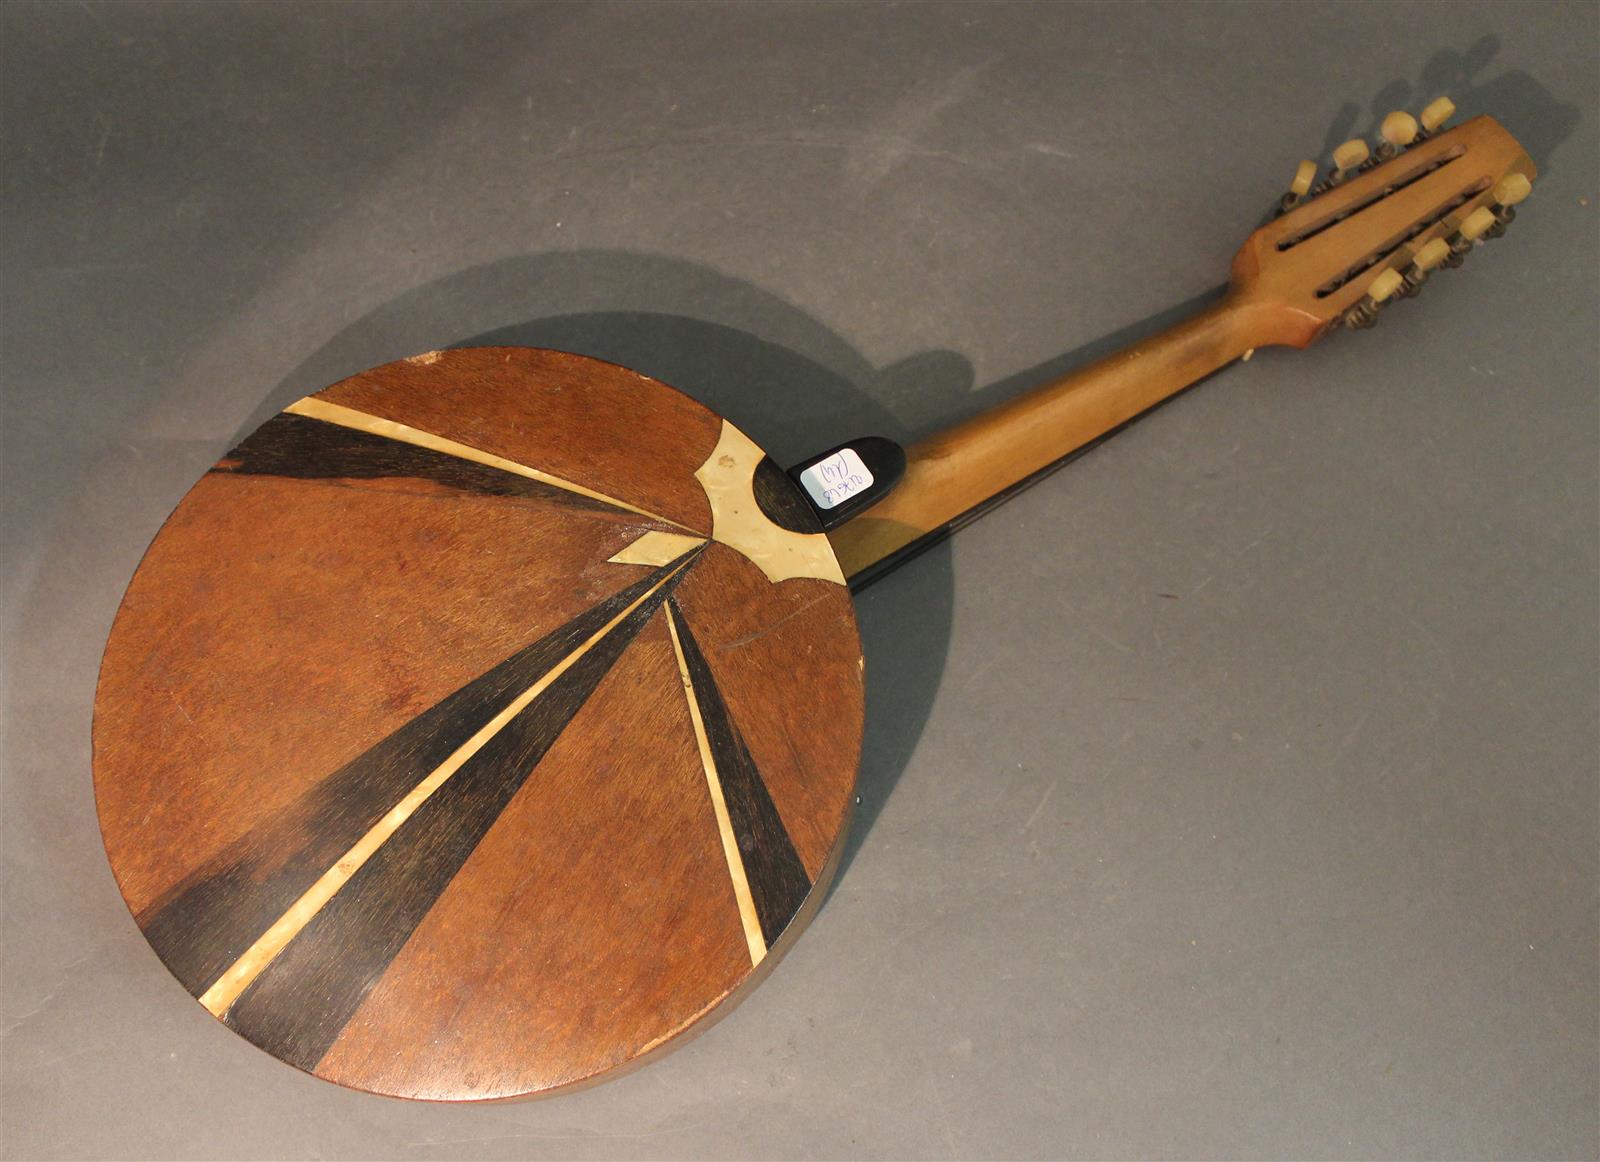 Anneaux de Jante de Banjo en Bois, Structure Robuste en Bois D'érable,  Jante de Banjo Exquise, Instrument de Musique Pratique pour Pièces de  Banjo